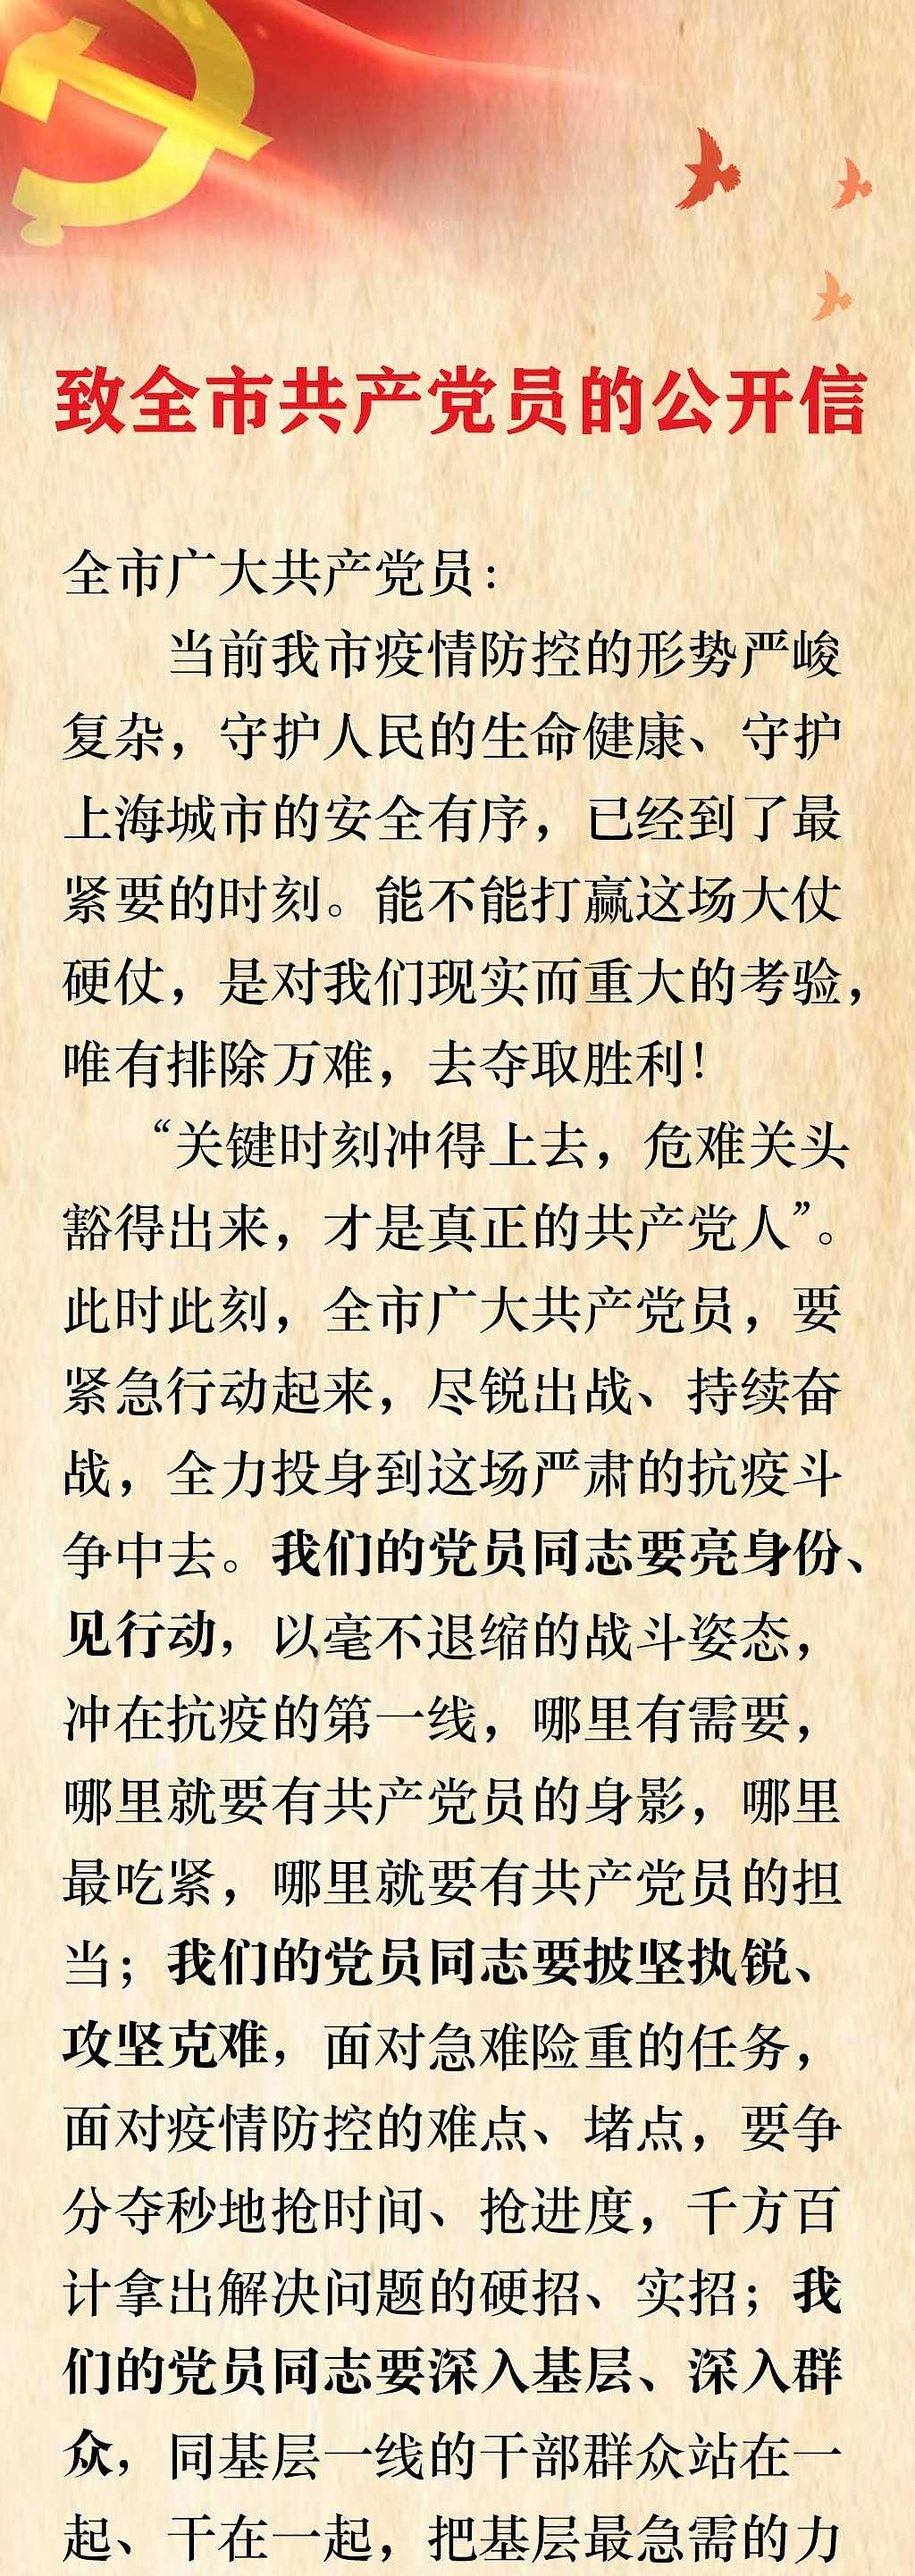 中共上海市委致全市共产党员的公开信 - 1